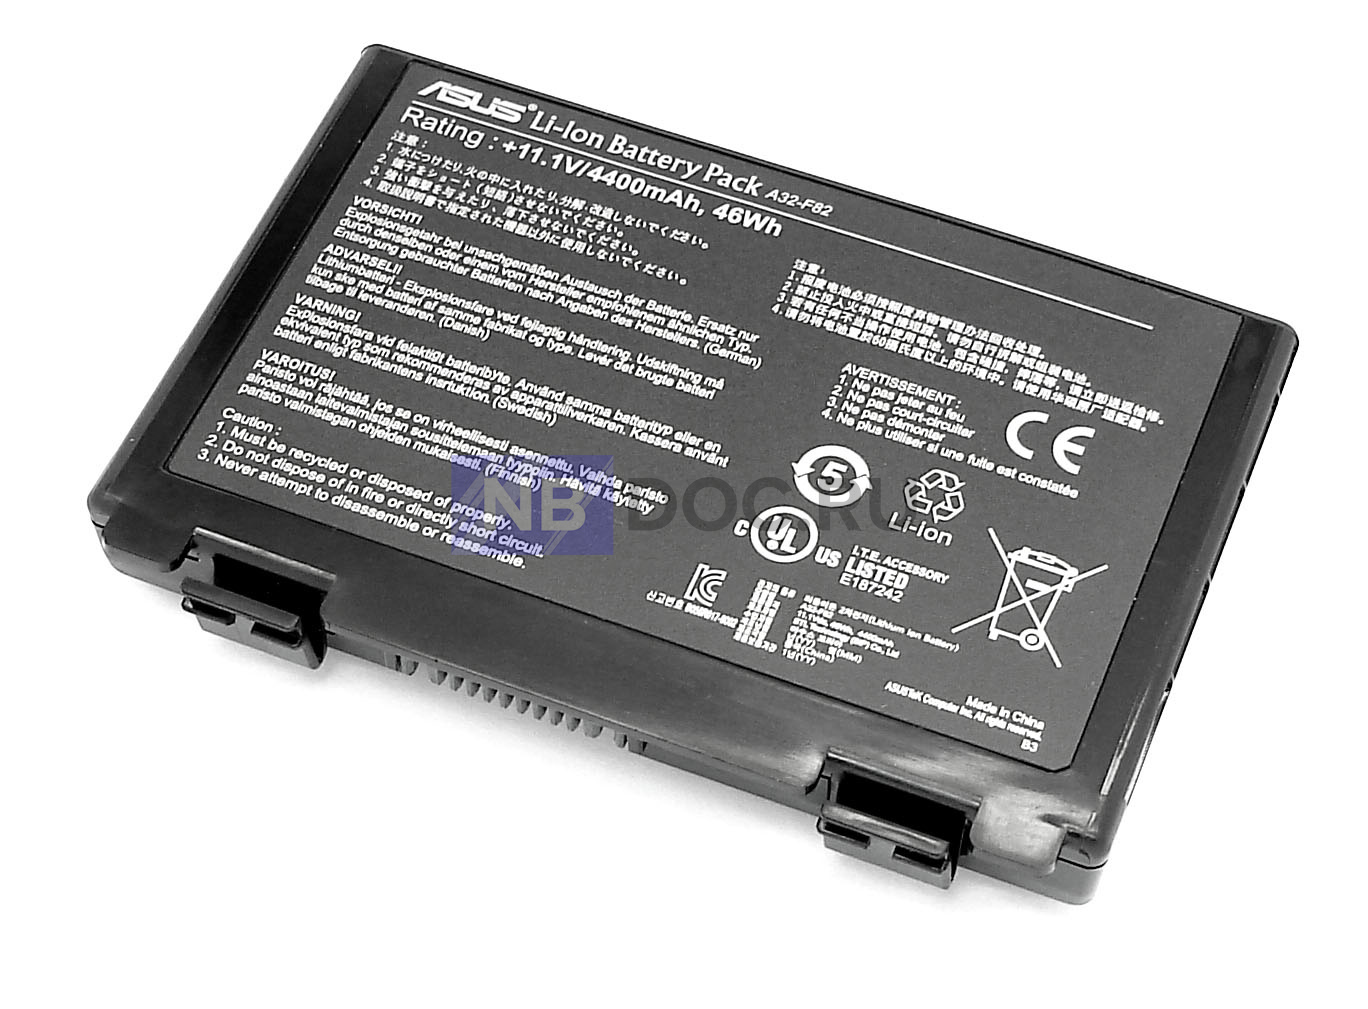 Battery a32. A32-f82 аккумулятор для ноутбука ASUS k40 k50 k70 f82 x5 4400mah, 11.1v. A32-f82 аккумулятор. Аккумулятор ASUS a32-f52. А32-f82 для ноутбука ASUS батарея.